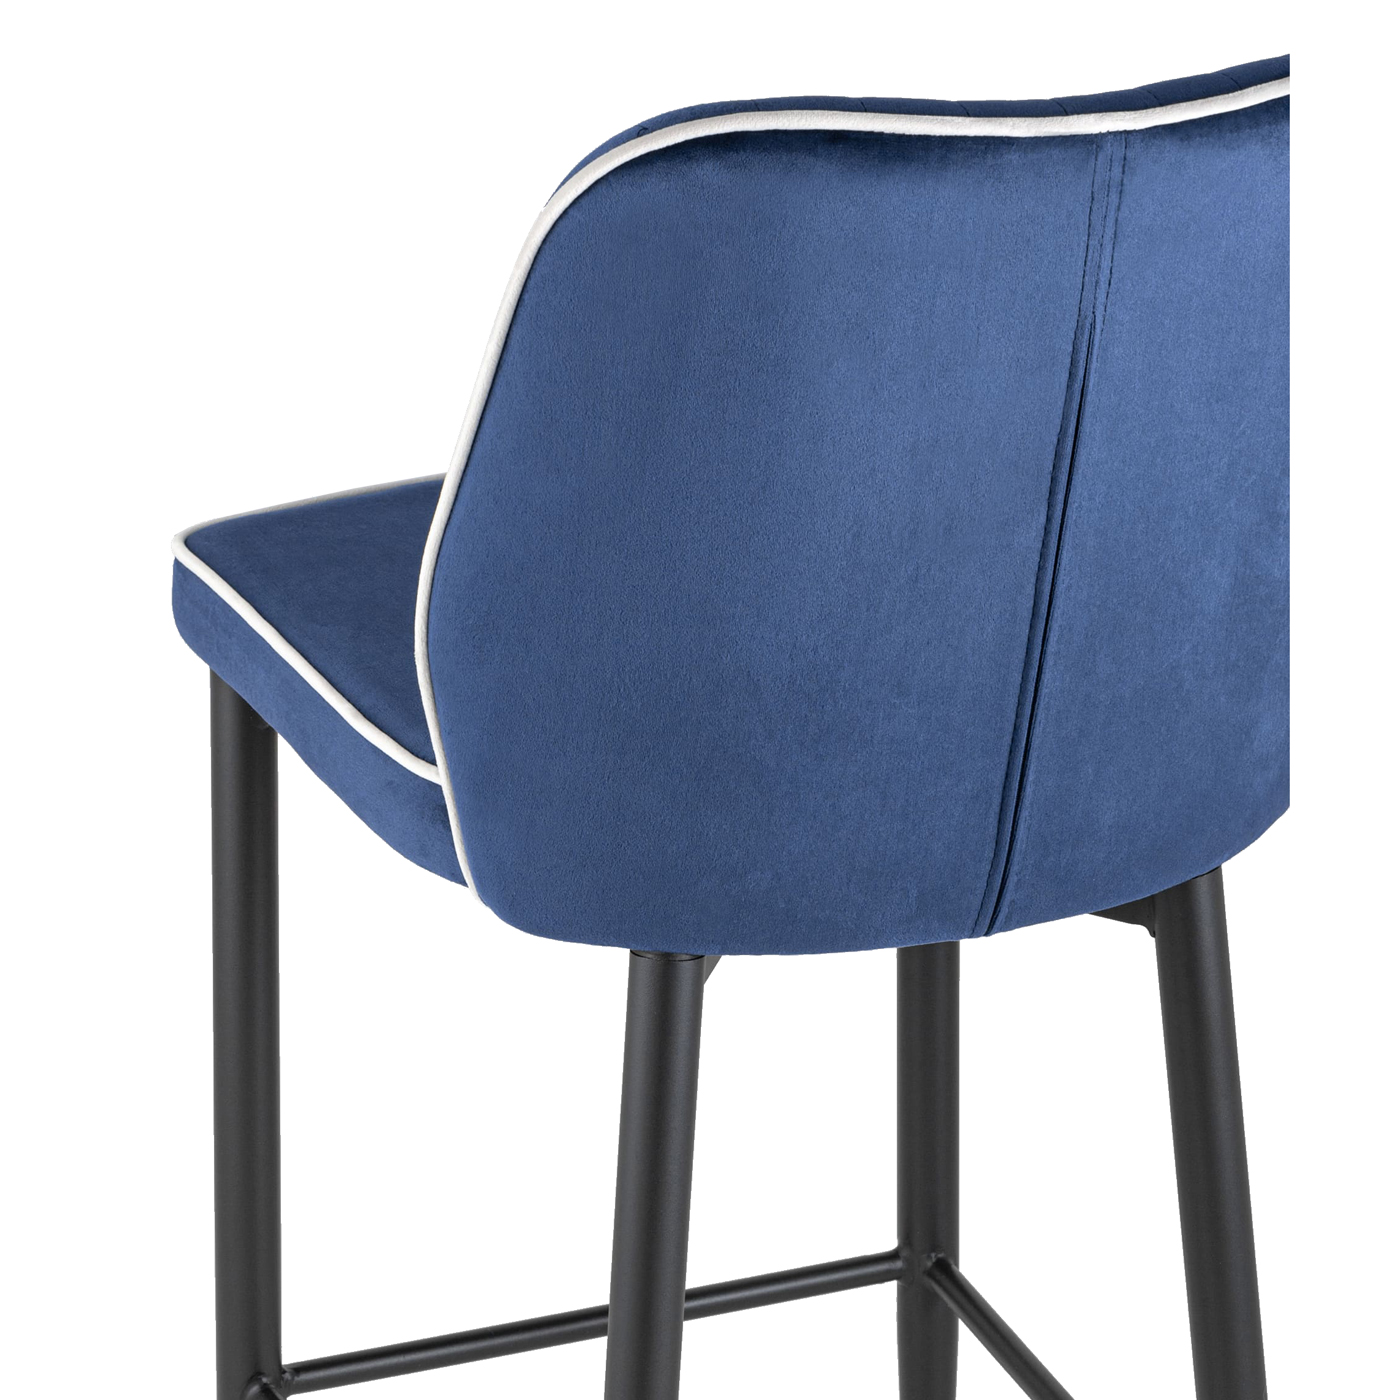 барный стул велюр синий